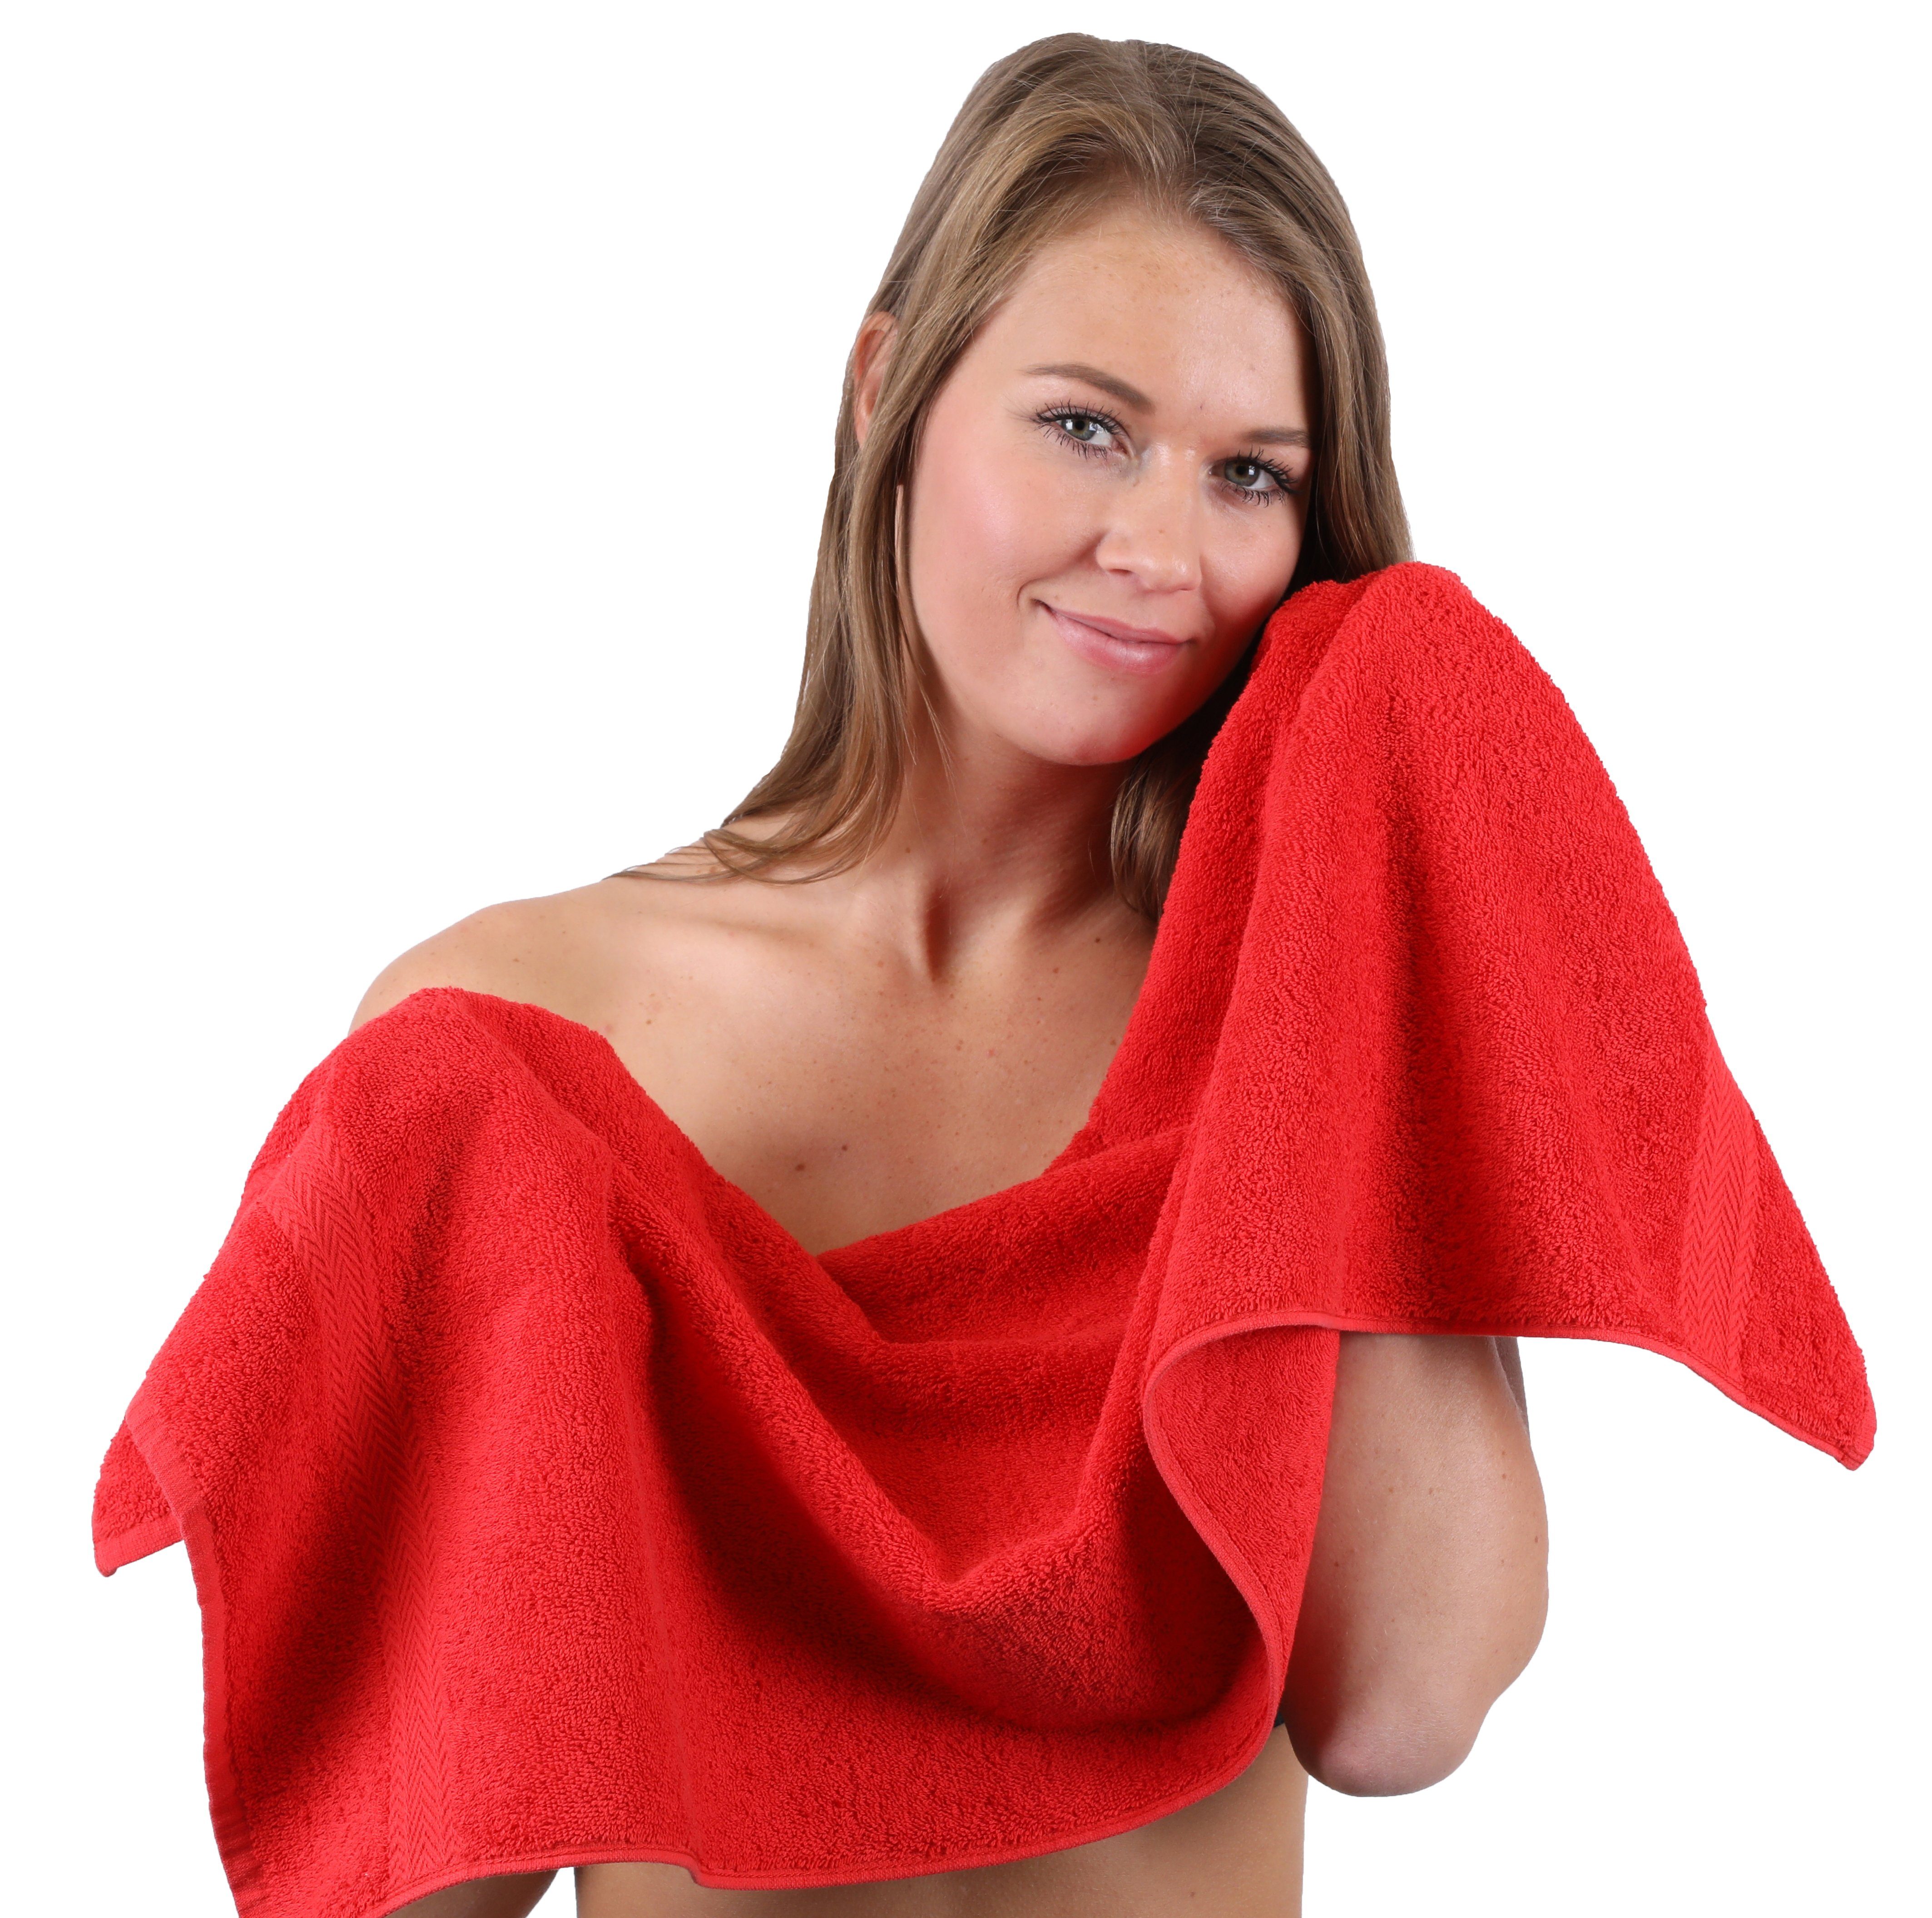 Betz Handtuch Set 10-TLG. Handtuch-Set (10-tlg) Dunkelbraun, & Baumwolle, Rot 100% Farbe Premium